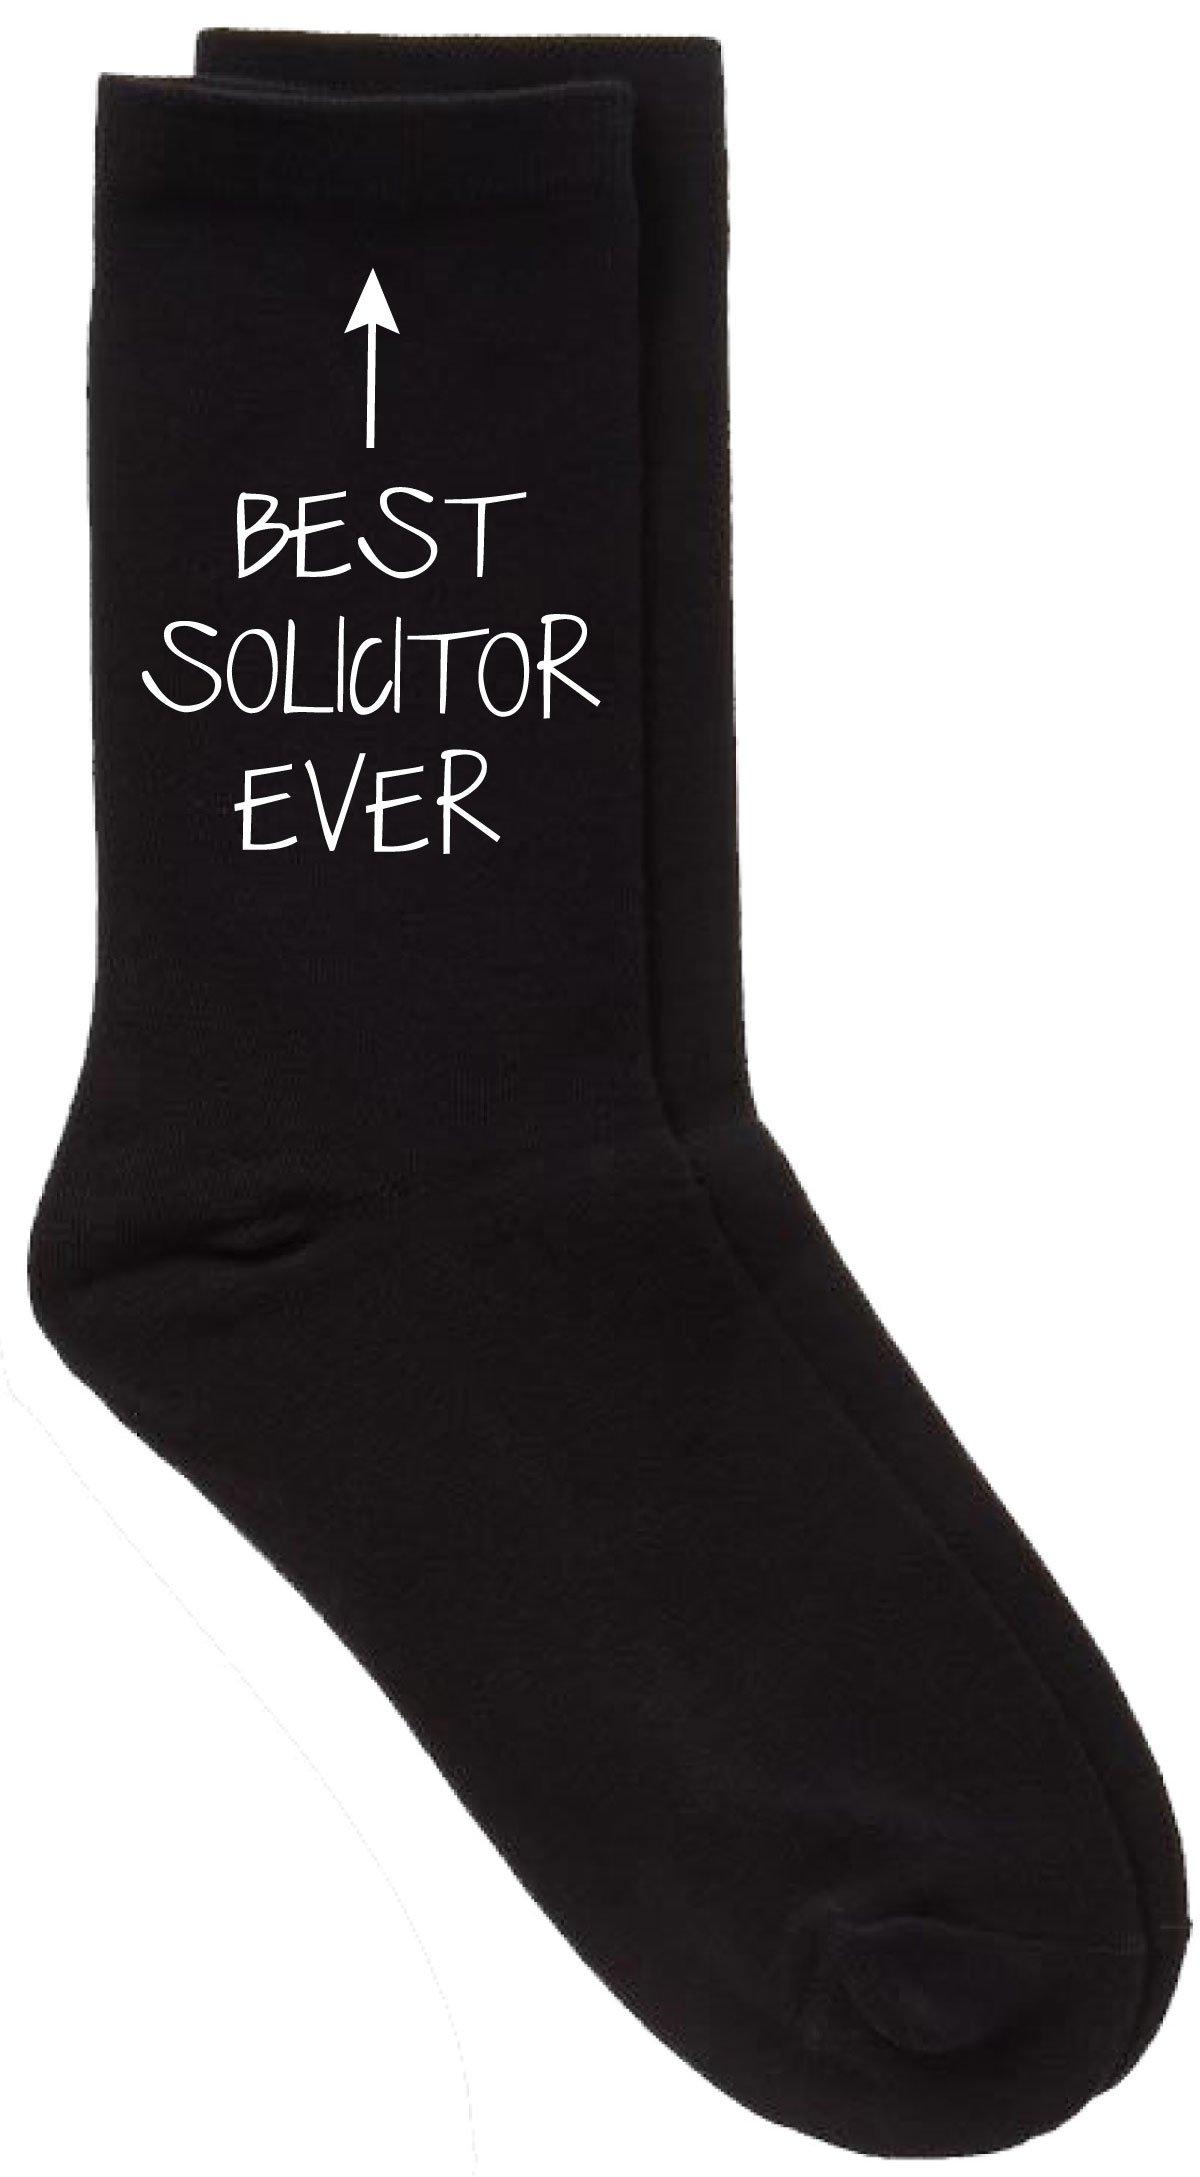 черные носки до щиколотки best dad ever period 60 second makeover черный Черные носки до голени Best Solicitor Ever 60 SECOND MAKEOVER, черный